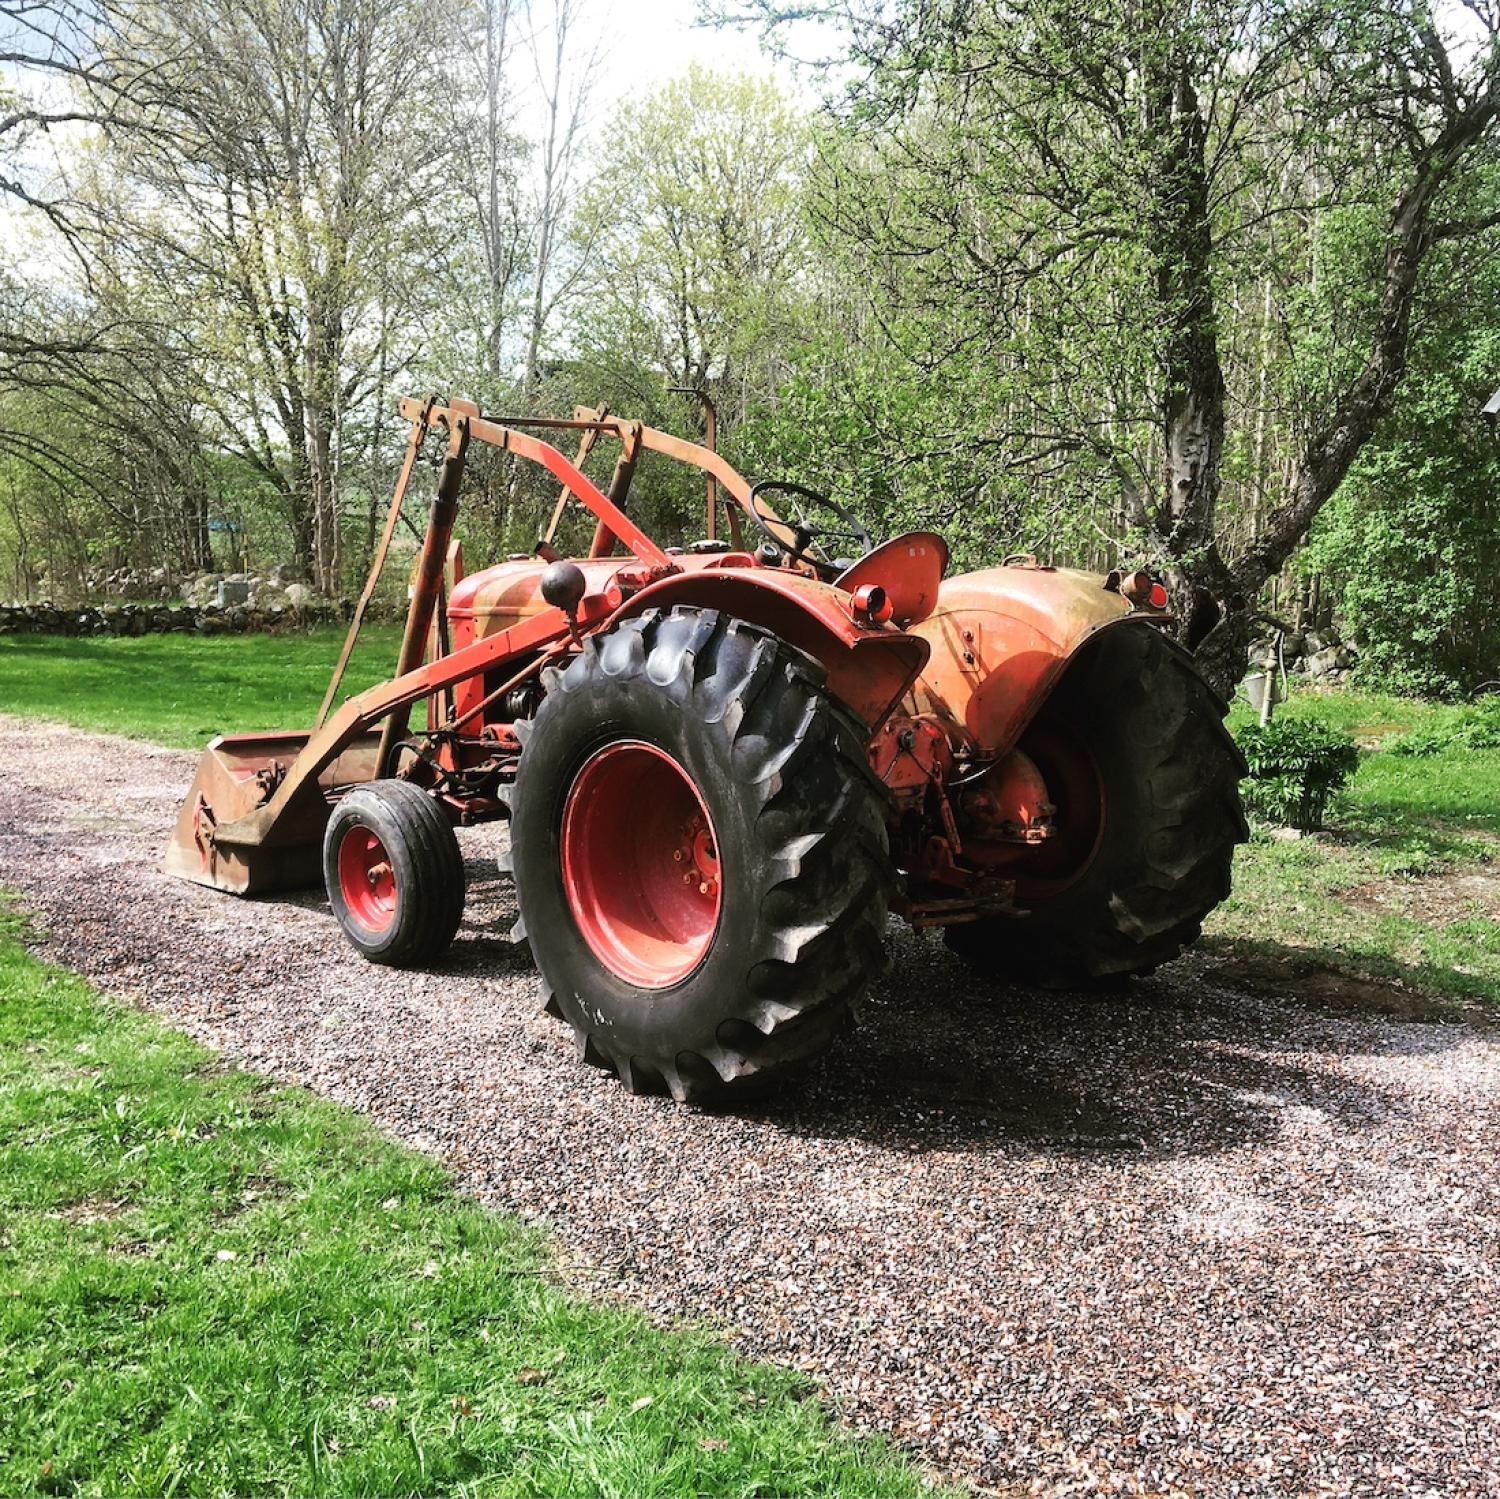 En traktor på en grusväg.